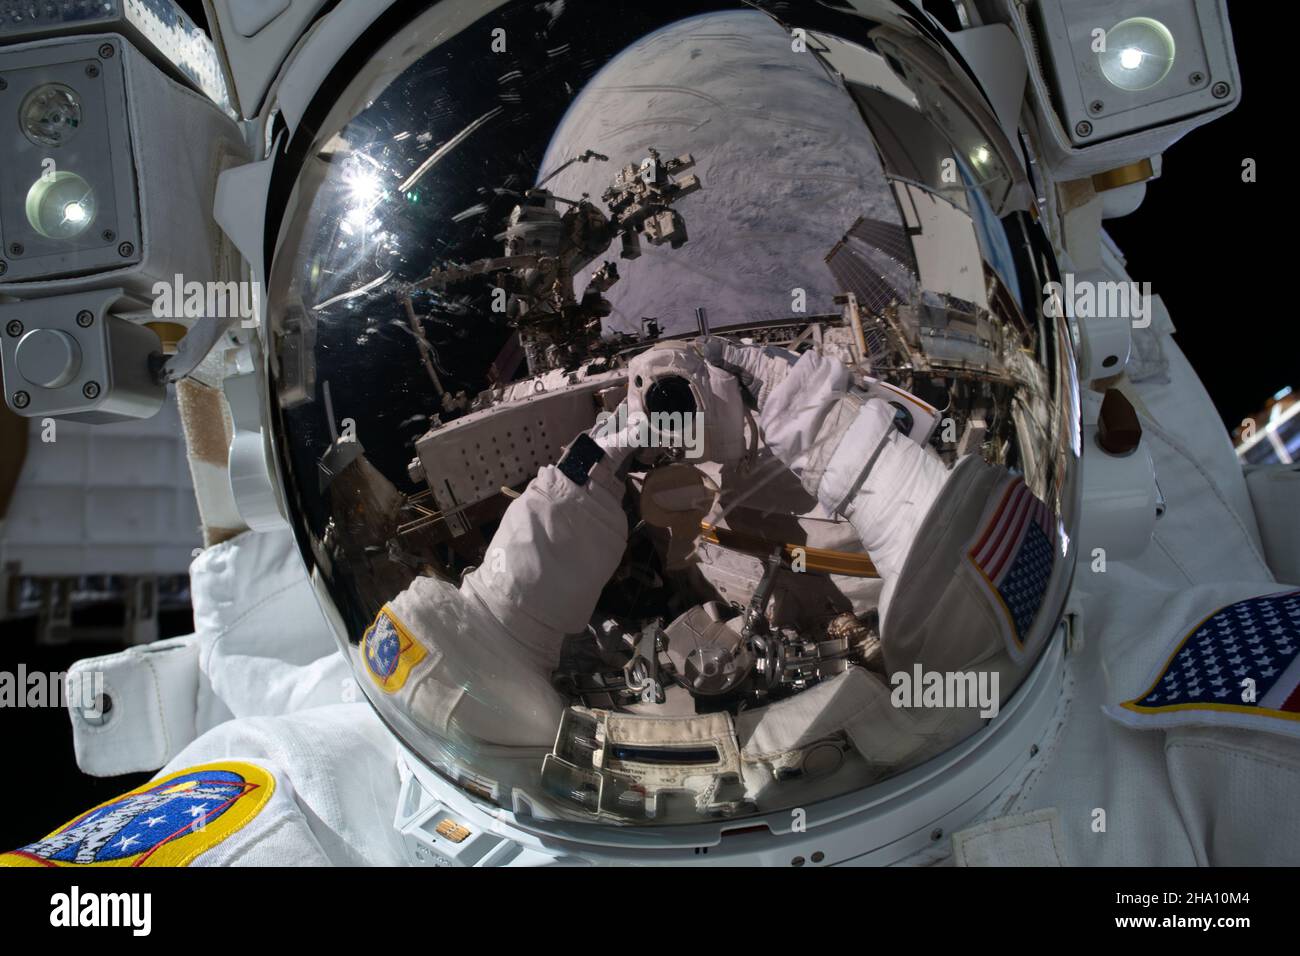 Stazione spaziale Internazionale, Earth Orbit. 02 dicembre 2021. L'astronauta della NASA Kayla Barron prende un selfie che si riflette nella visiera del casco durante un'area spaziale fuori dalla Stazione spaziale Internazionale, 2 dicembre 2021 in Earth Orbit. Credit: Kayla Barron/NASA/Alamy Live News Foto Stock